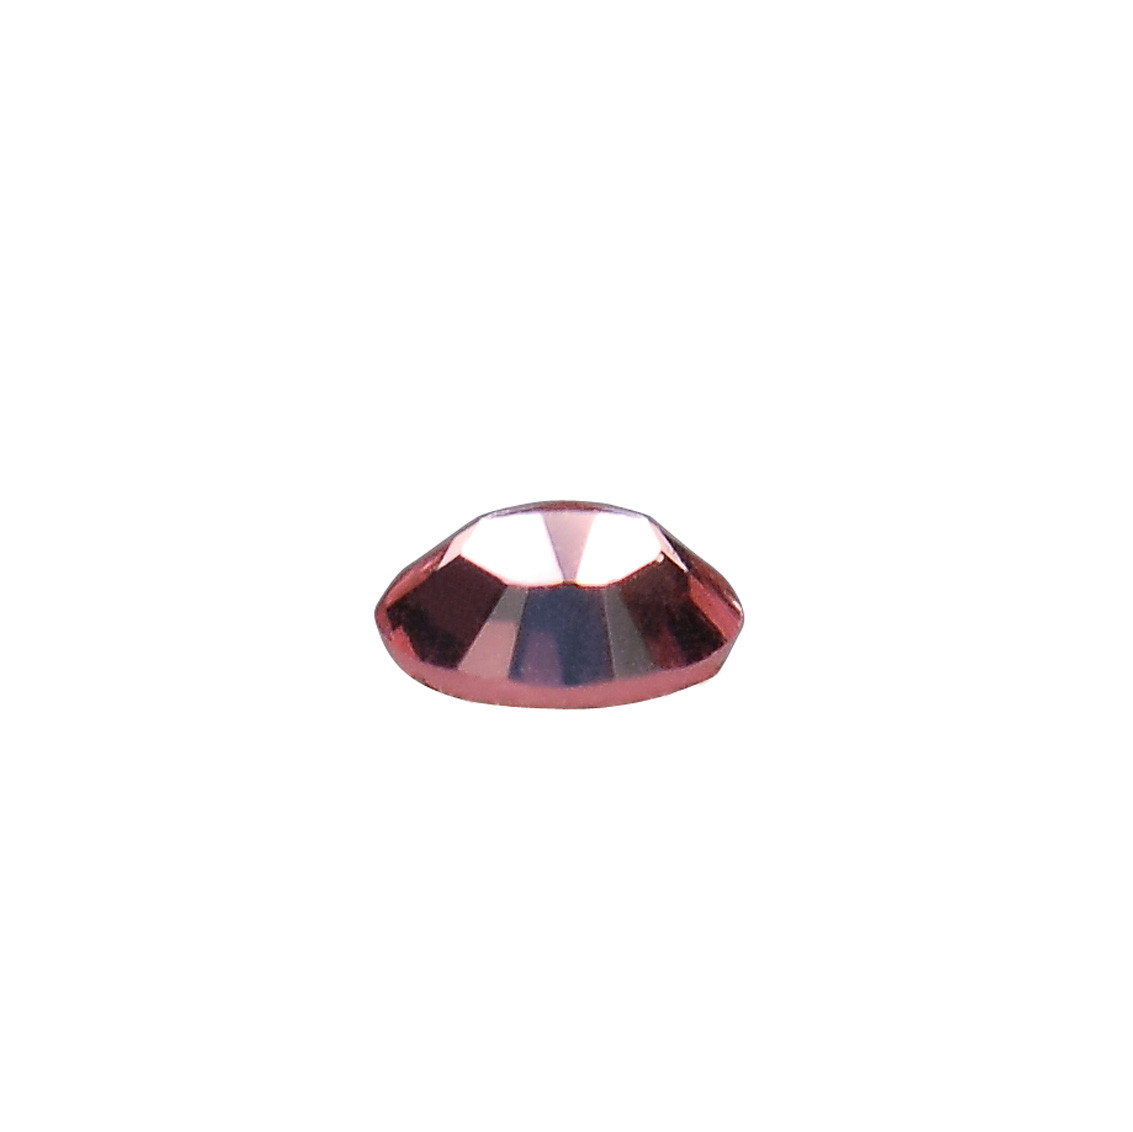 Cristalli Swarovski® per Nail Art Light Rose misura SS6 1440 pz